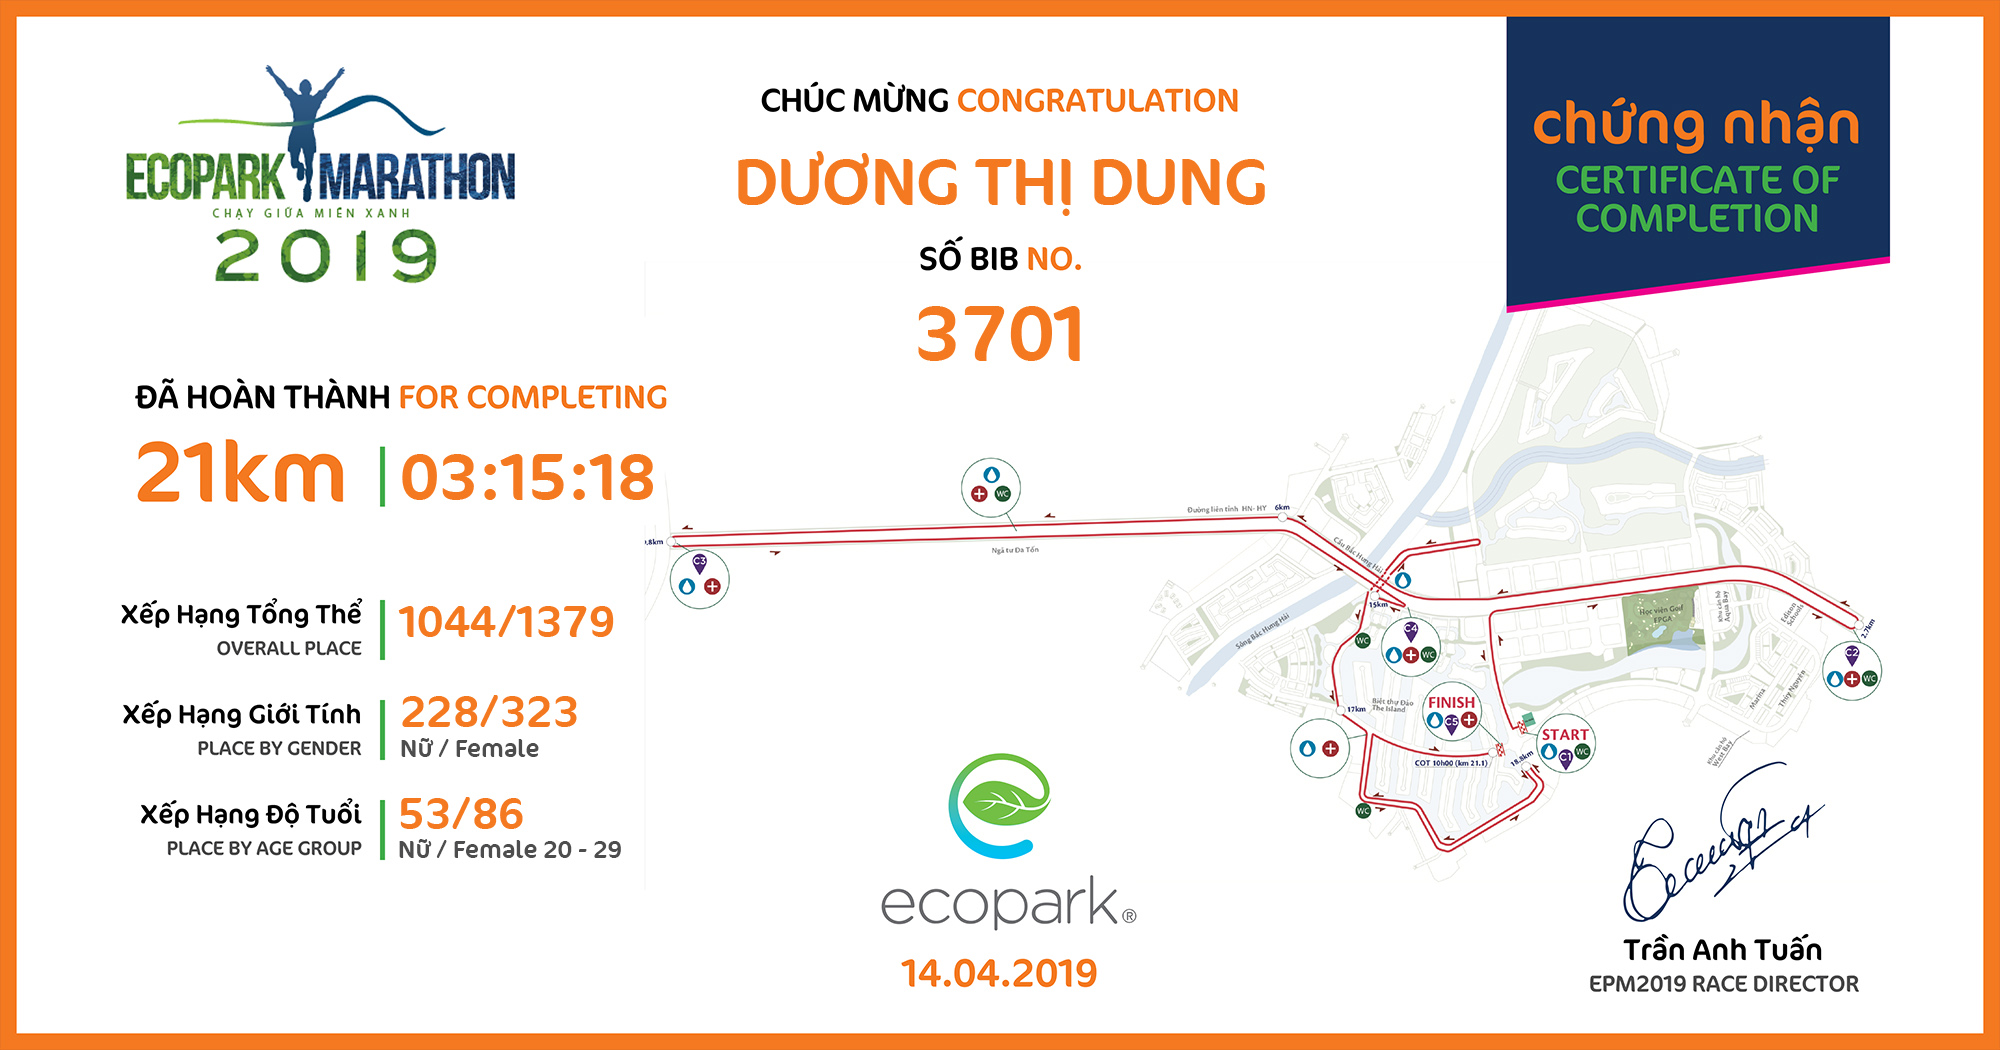 3701 - Dương Thị Dung